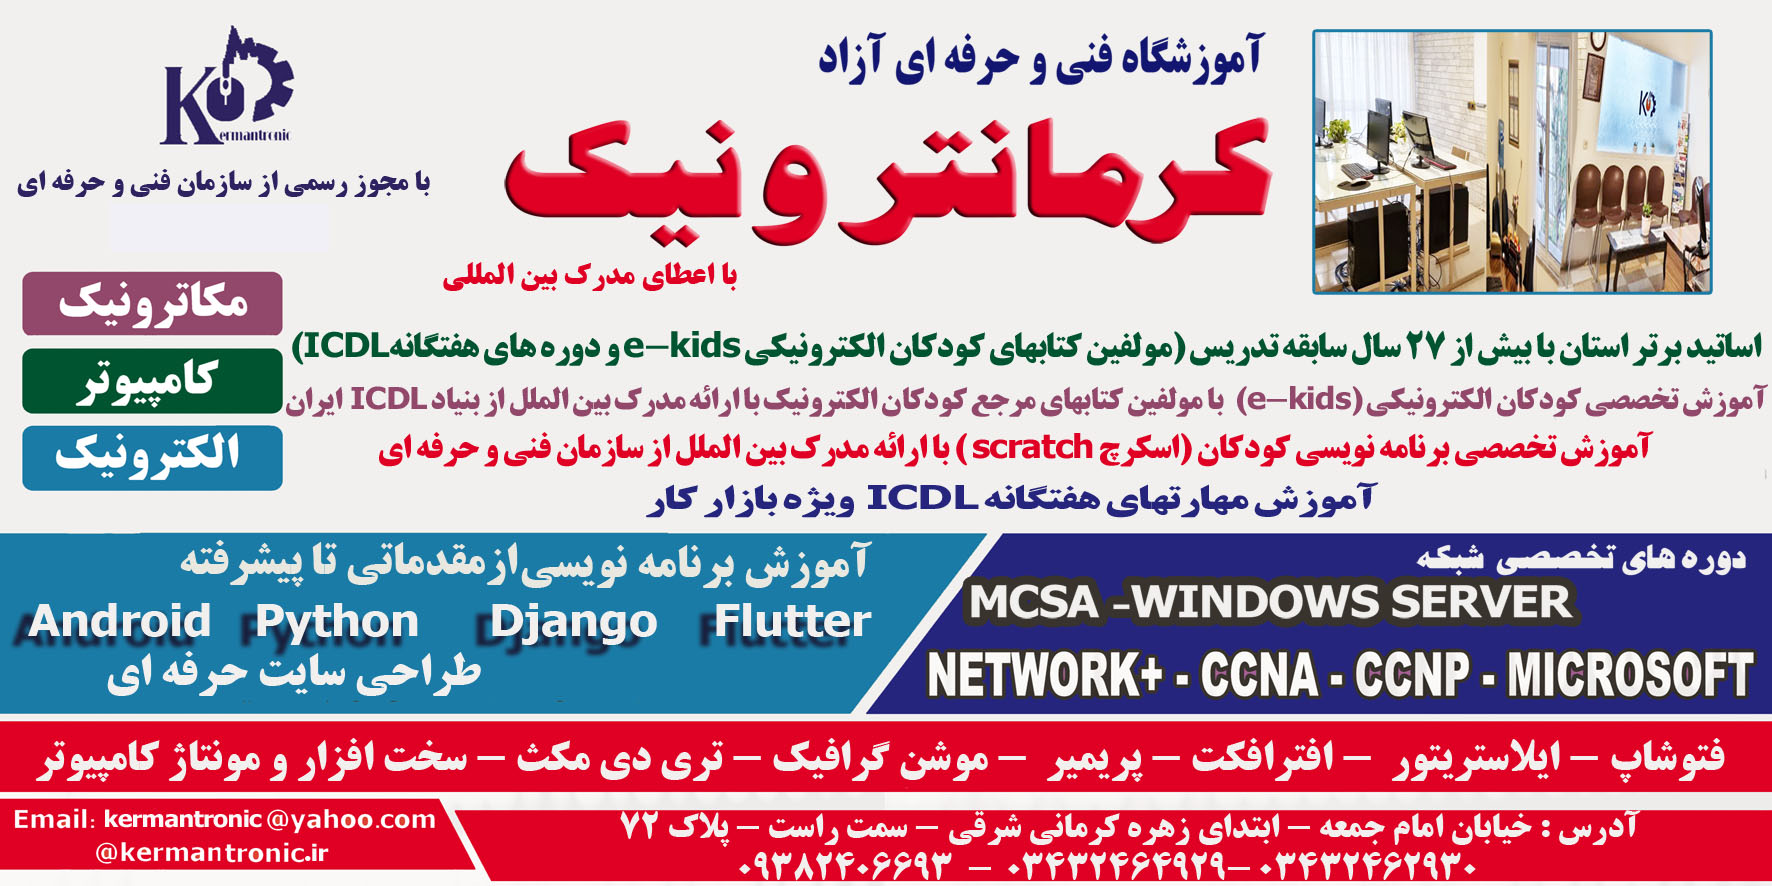 آموزشگاه کامپیوتر کرمان | کرمانترونیک